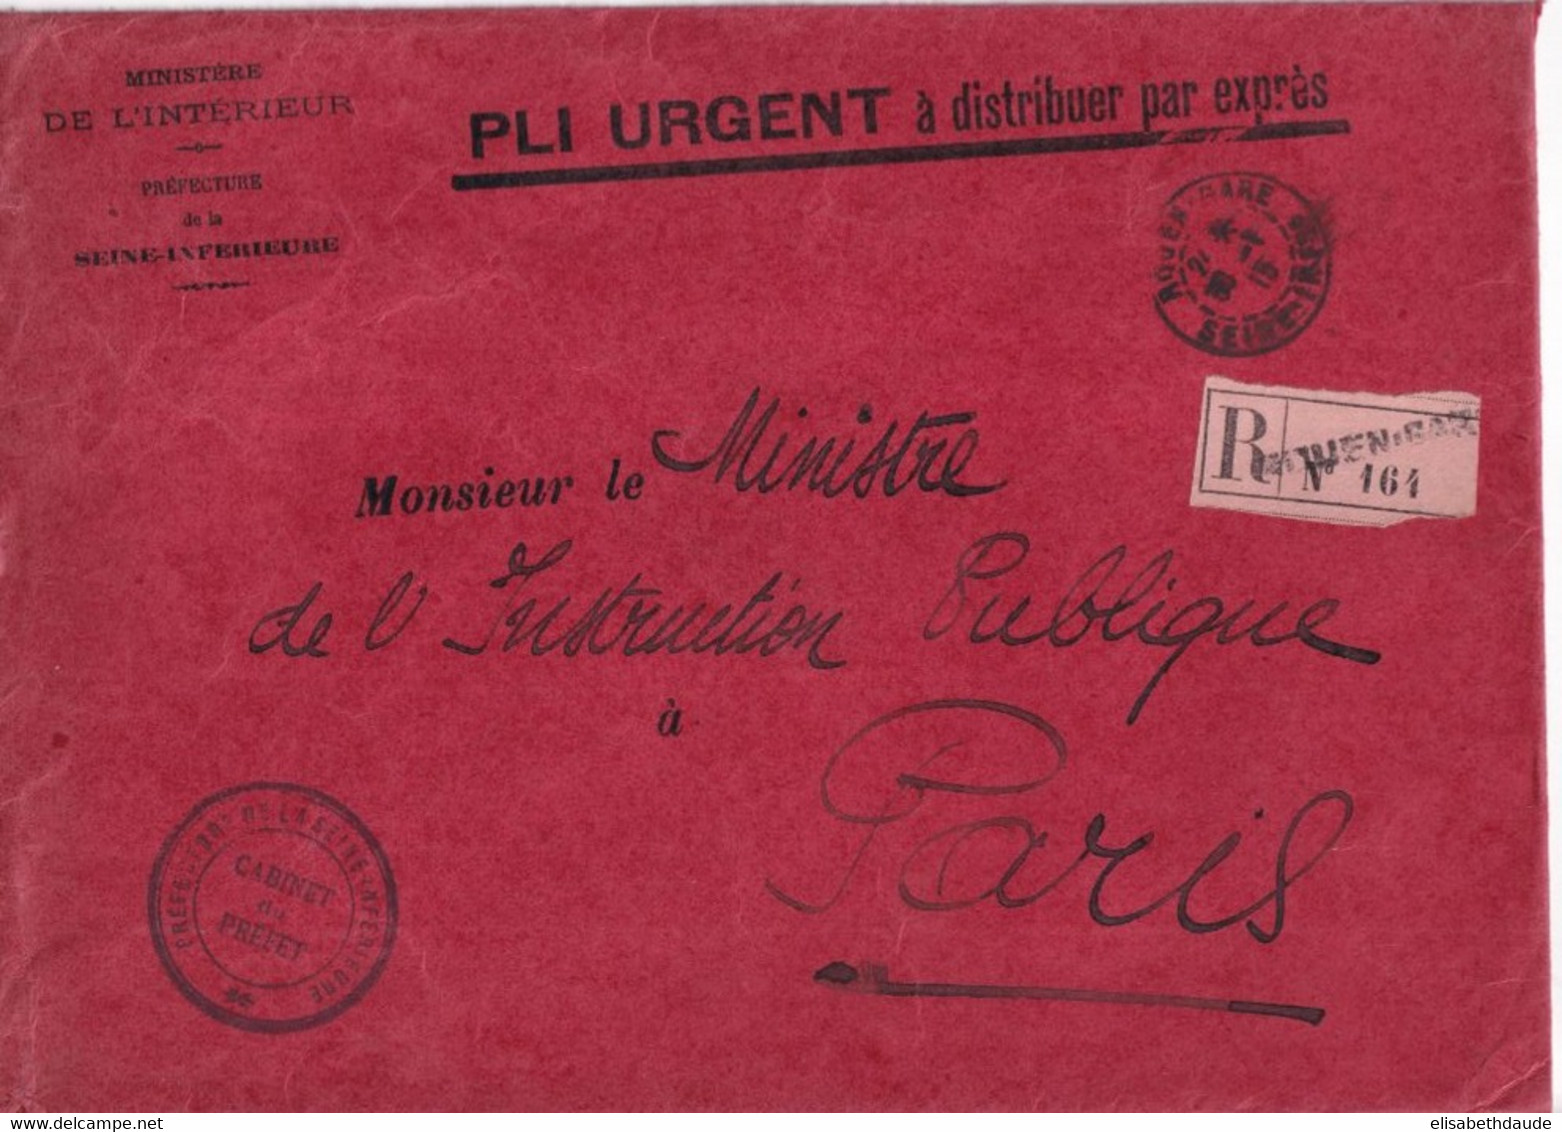 1915 - SEINE INFERIEURE - ENVELOPPE GF EXPRES ! RECOMMANDEE En FRANCHISE De La PREFECTURE à ROUEN => MINISTRE INTRUCTION - Civil Frank Covers